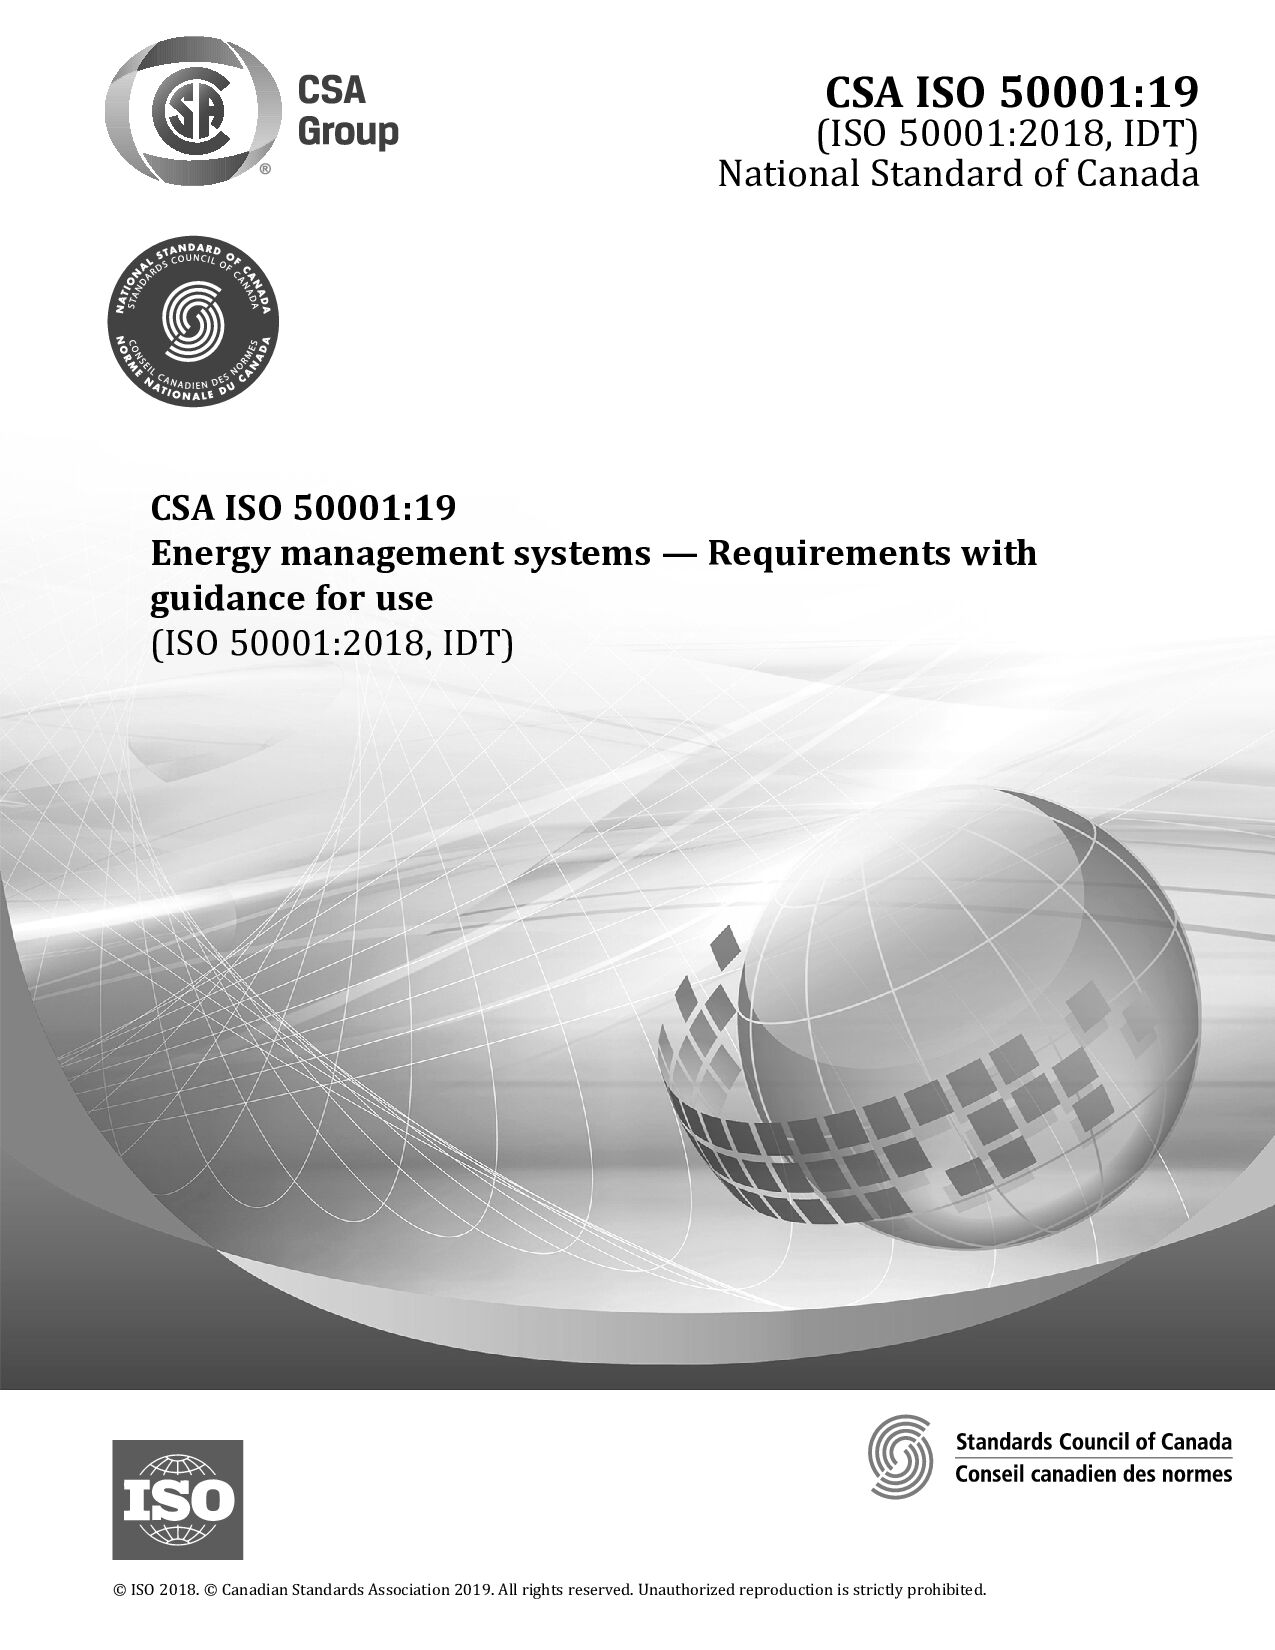 CSA ISO 50001:2019封面图